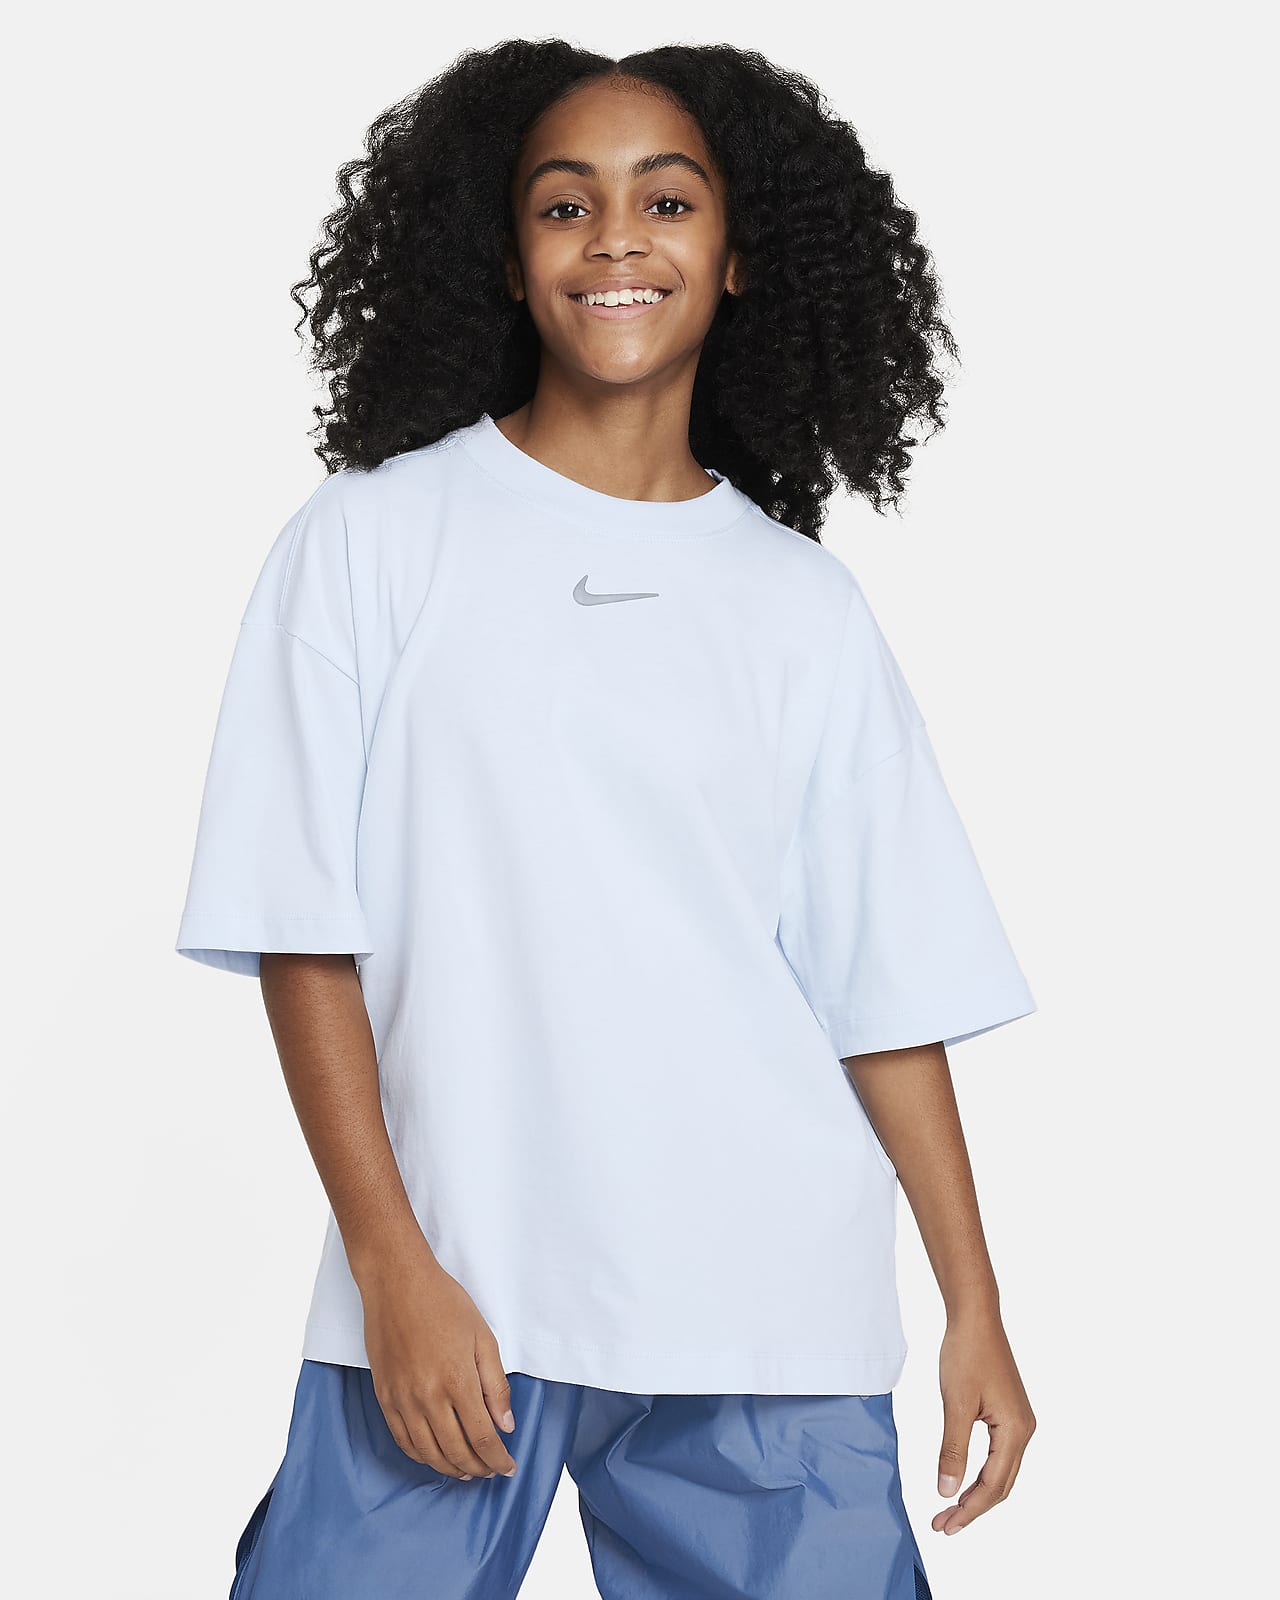 Nike Sportswear oversized T-shirt voor meisjes